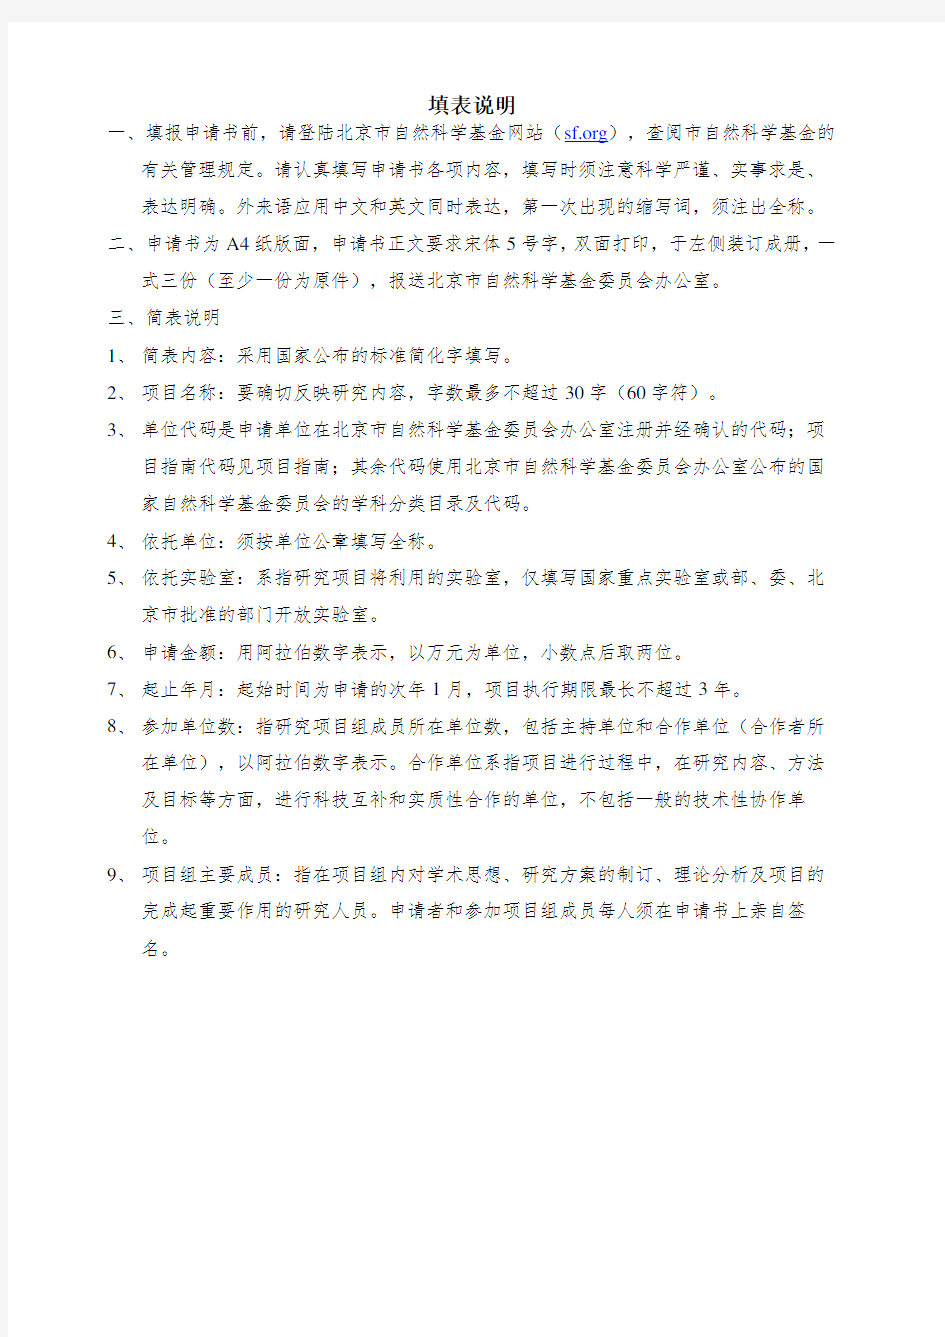 北京市自然科学基金申请书面上项目模板